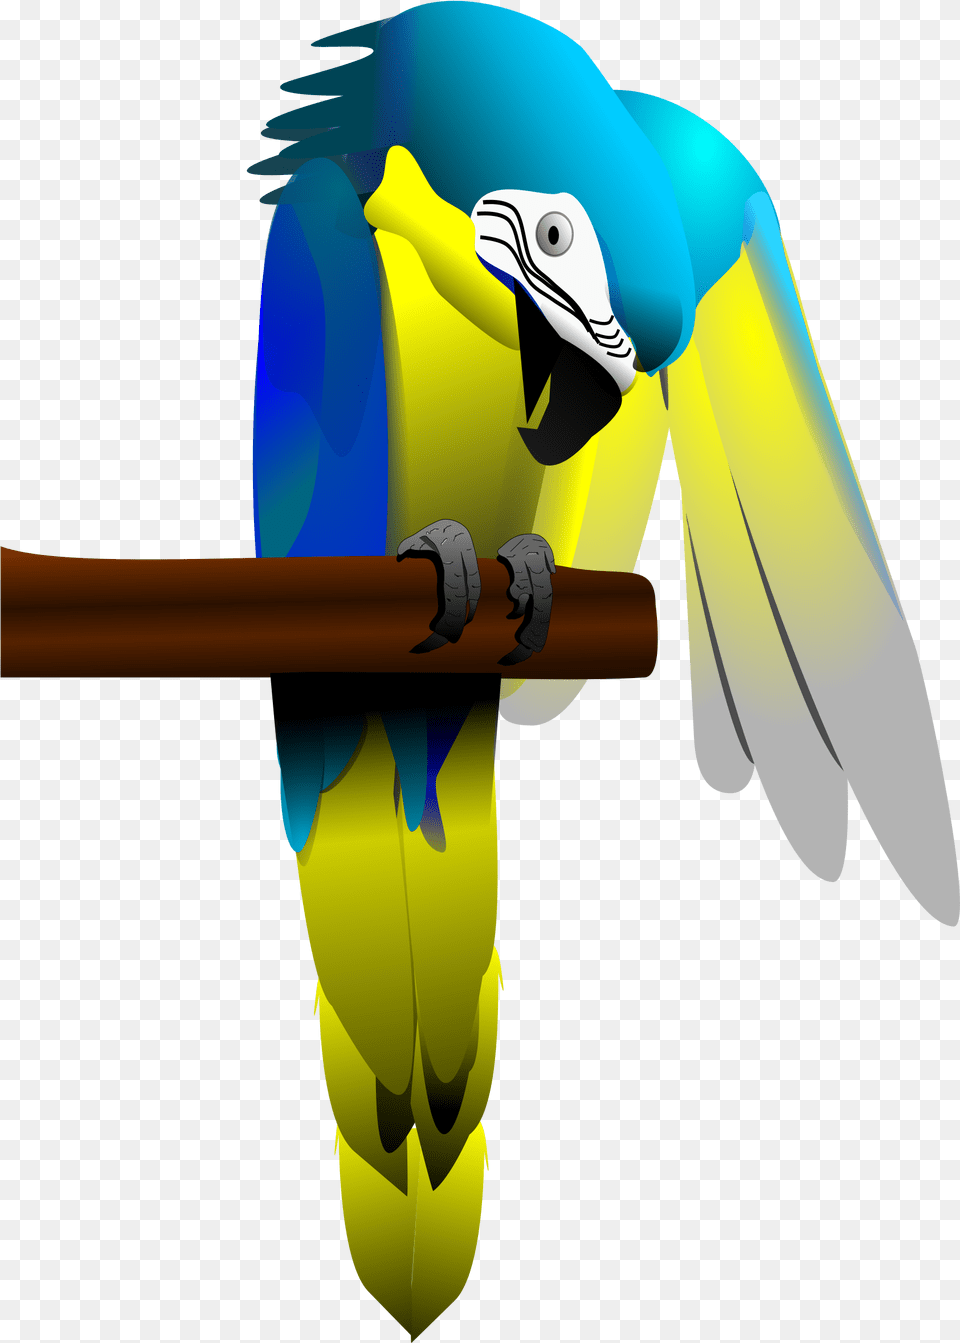 Blue And Yellow Macaw Parrot Clip Arts Parrot, Animal, Bird, Beak Free Transparent Png